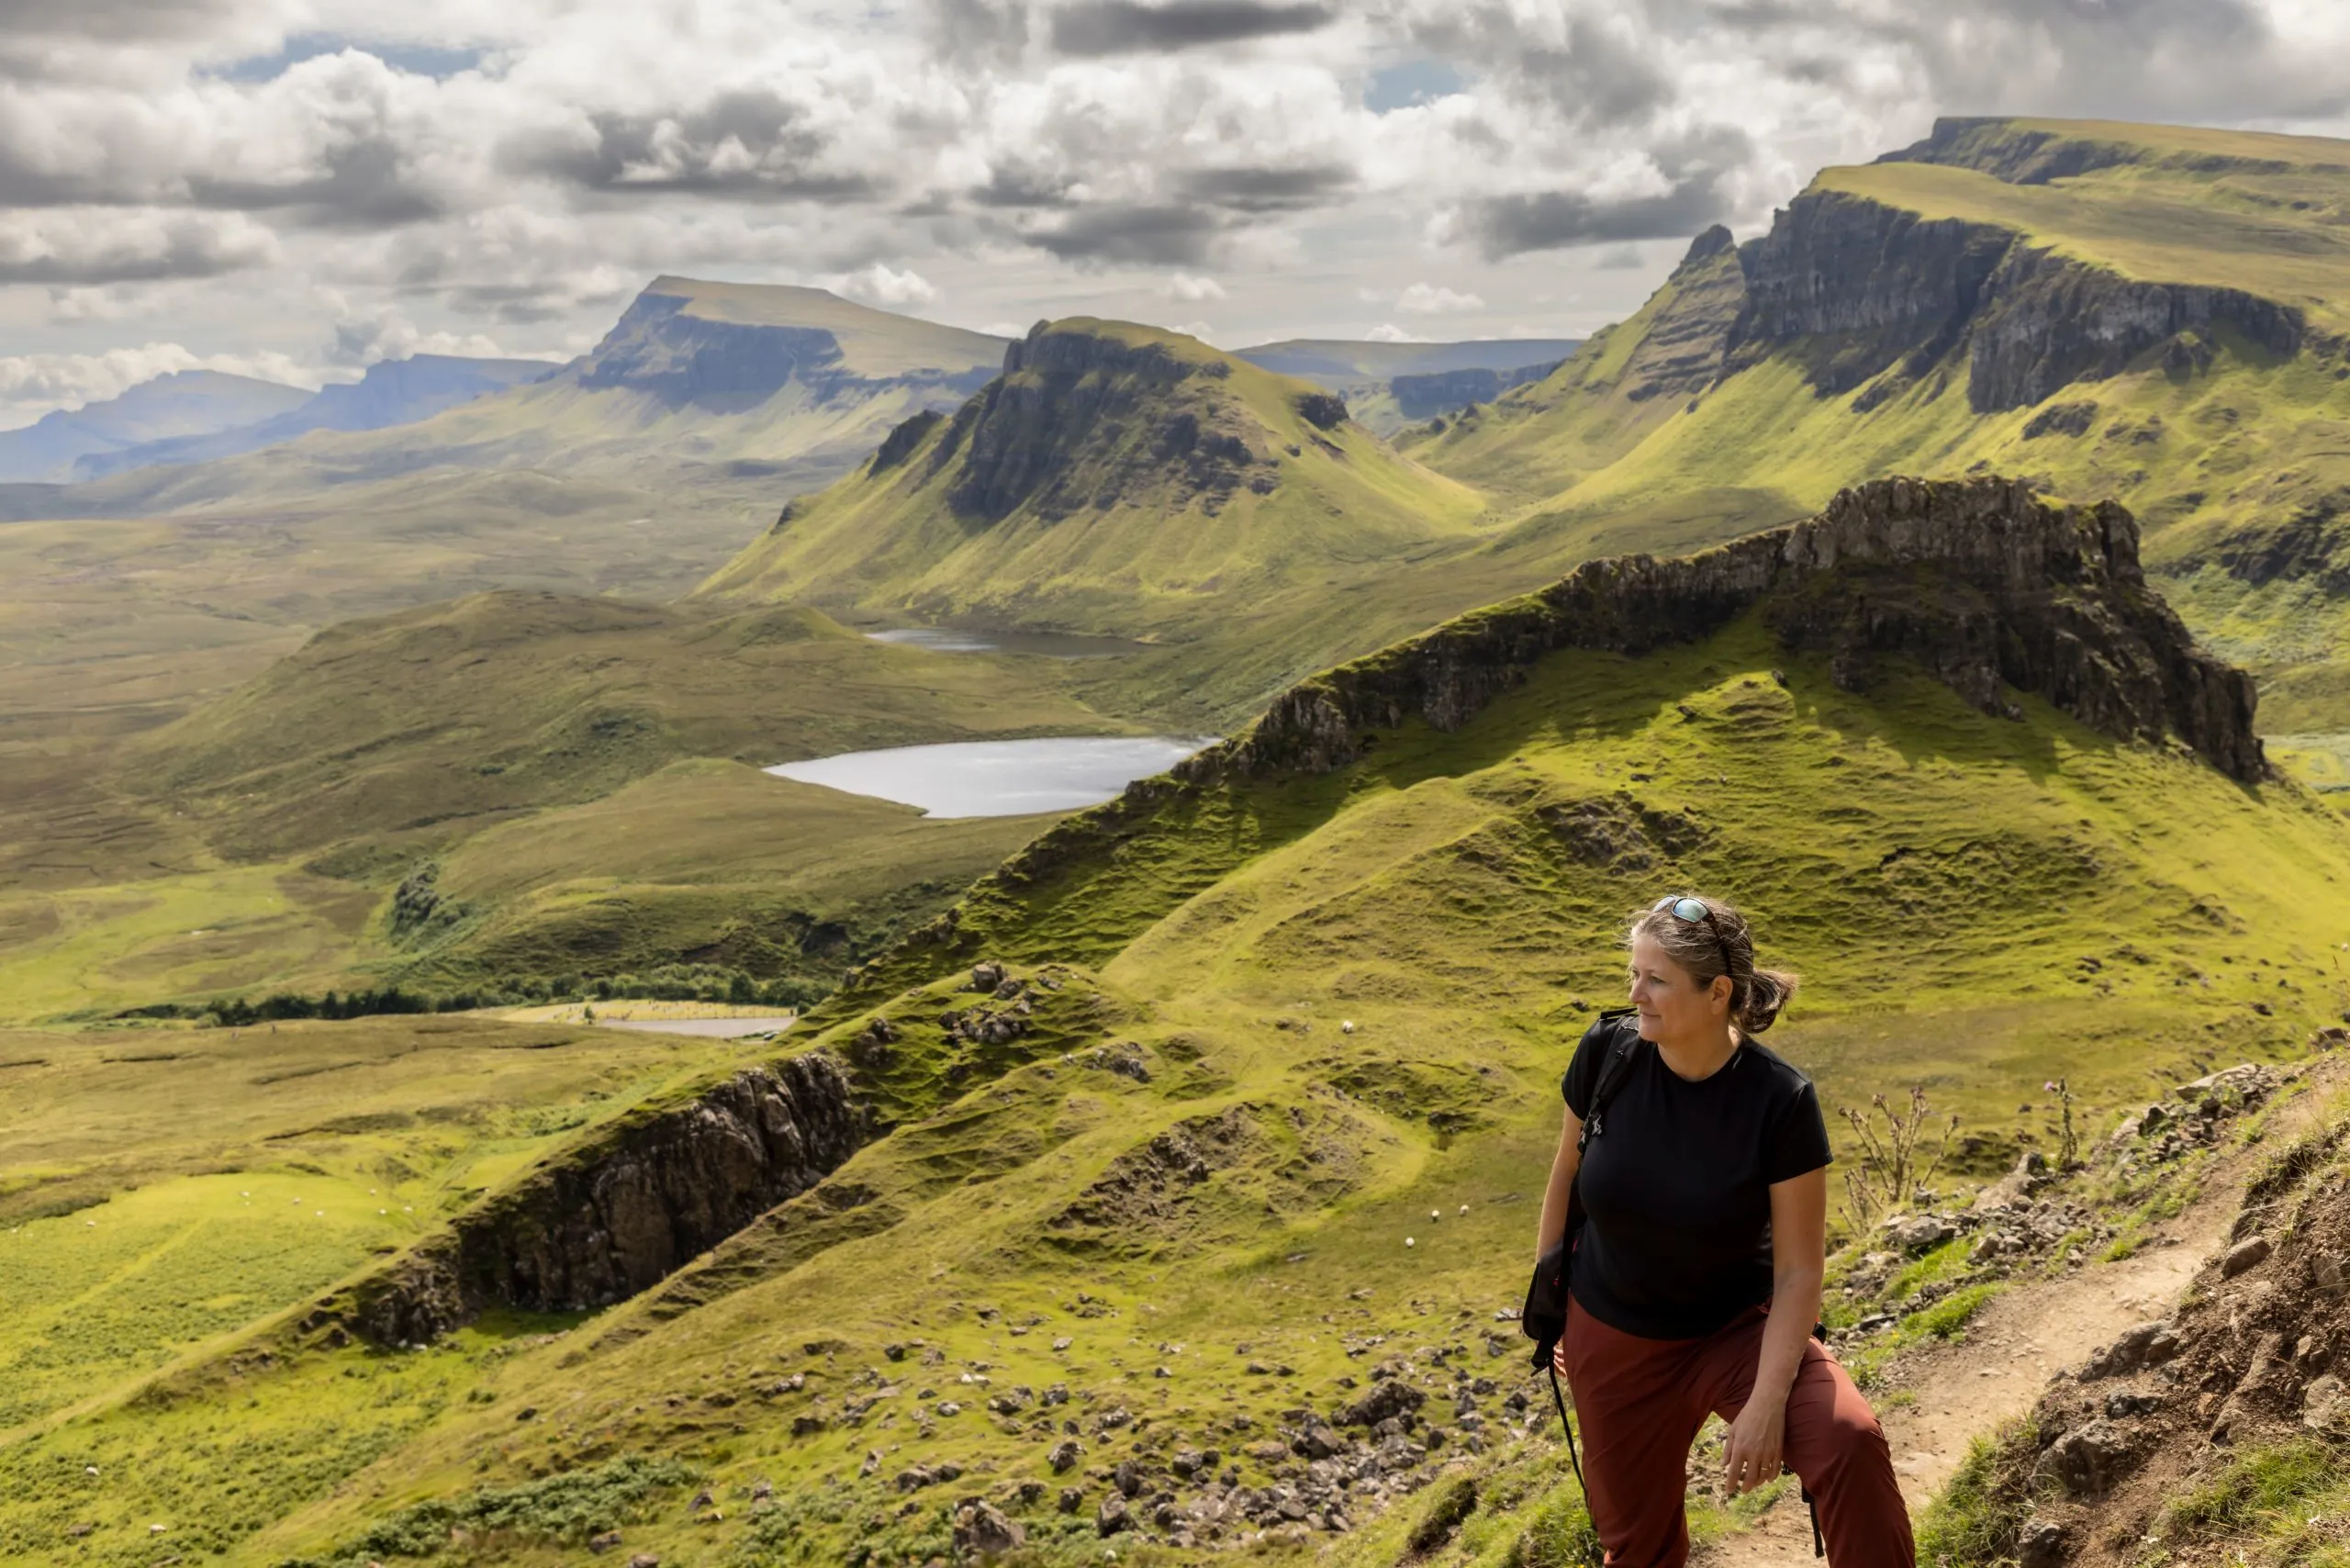 Femme en randonnée sur la chaîne de montagnes Quiraing. Il s'agit d'une formation géologique sur l'île écossaise de Skye et d'un paradis pour les randonneurs.